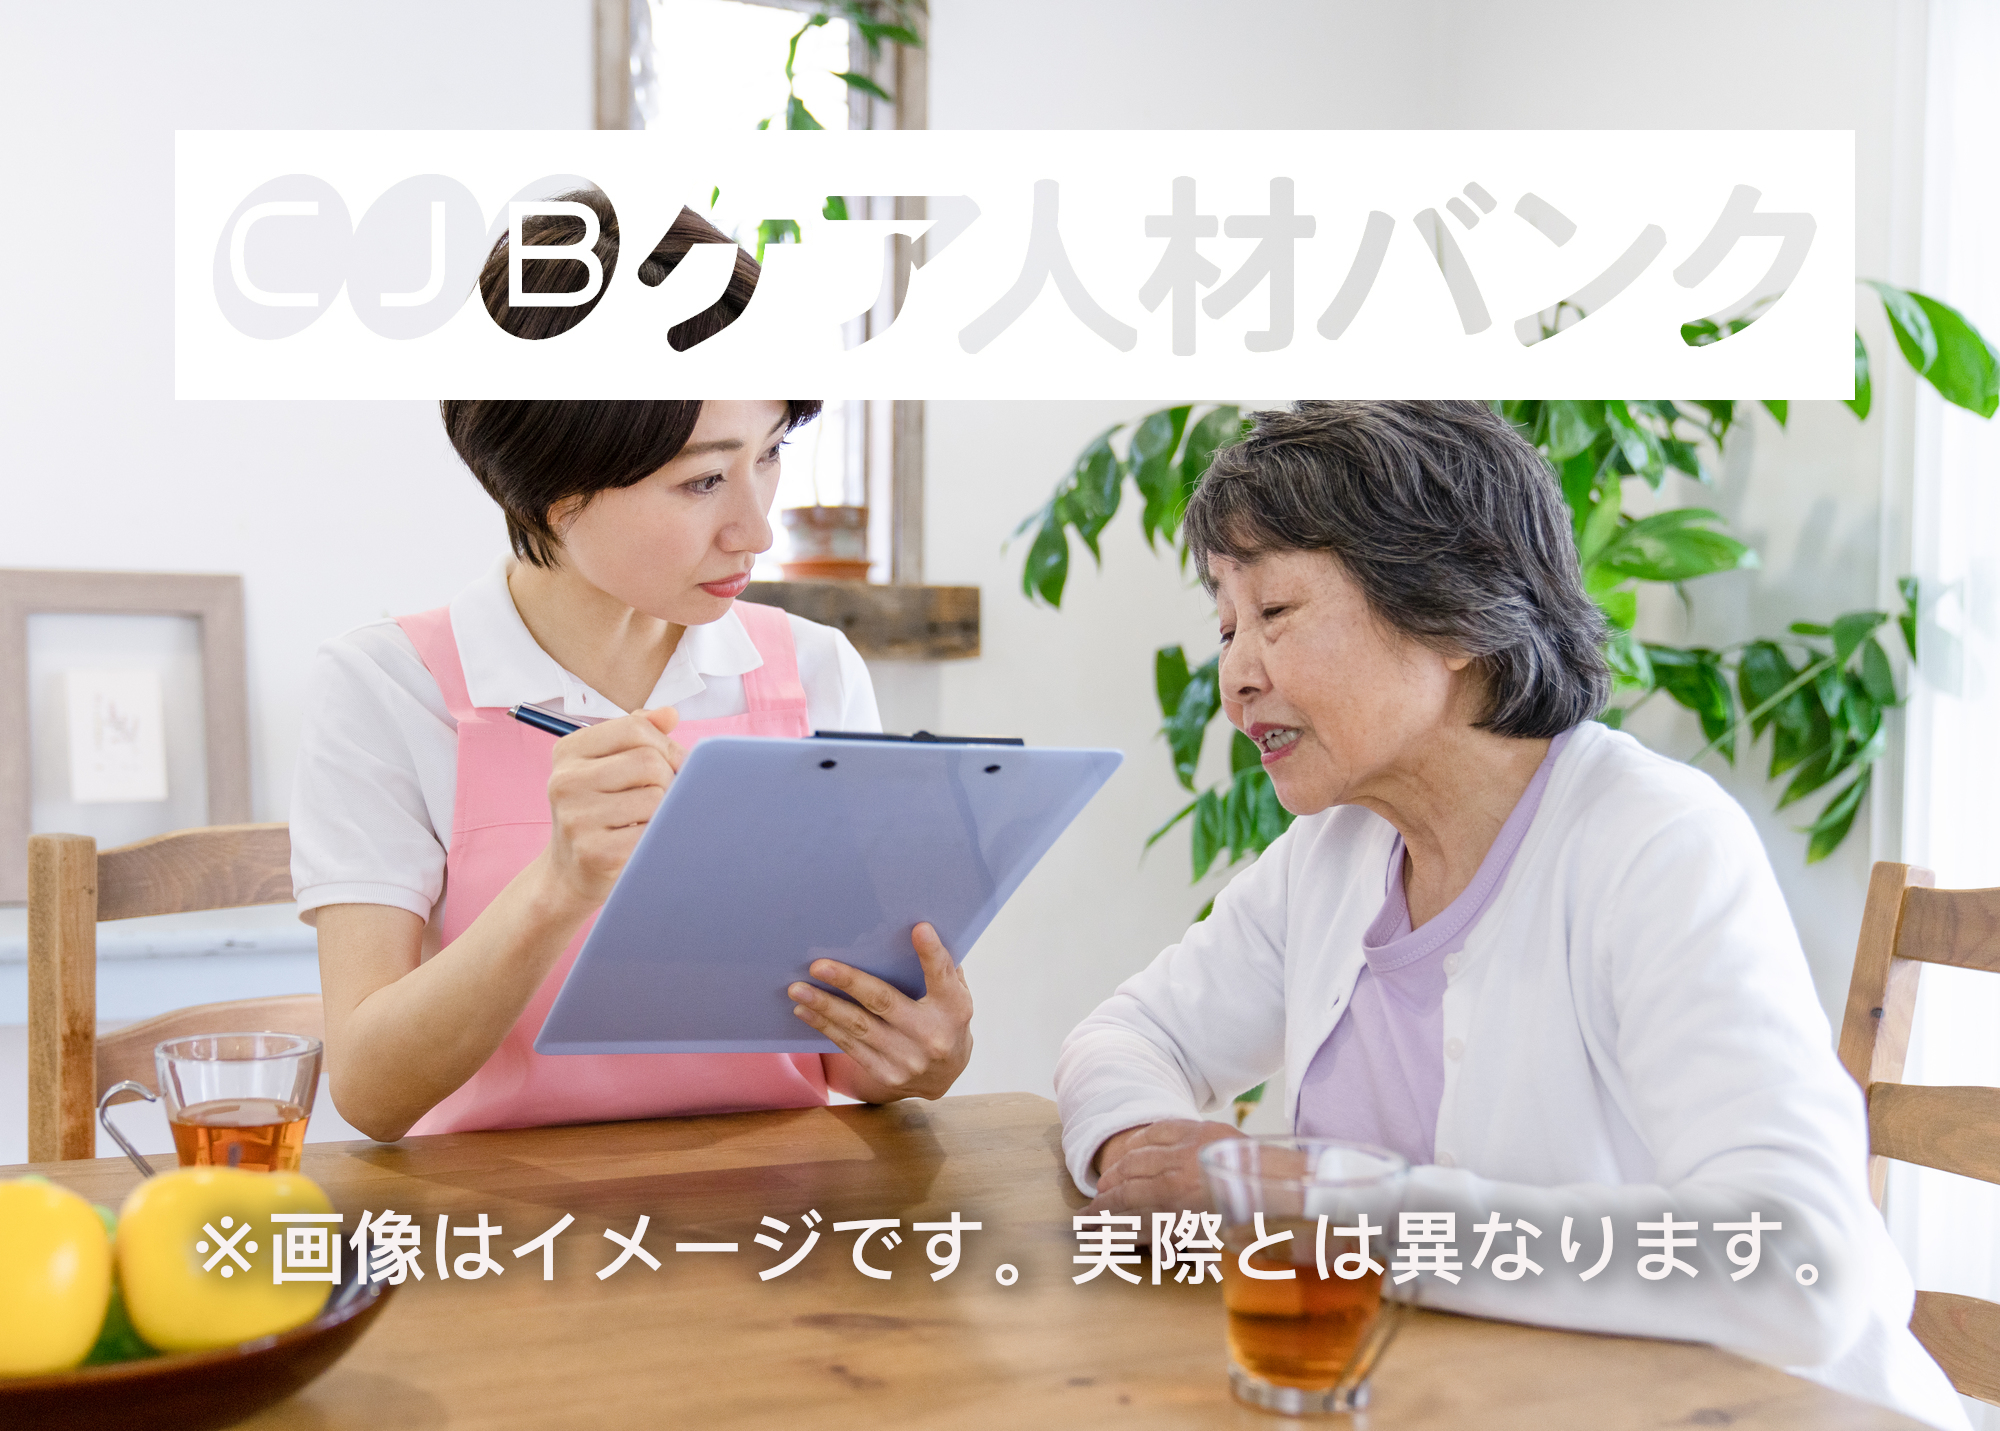 土屋訪問介護事業所香川 の求人_イメージ画像